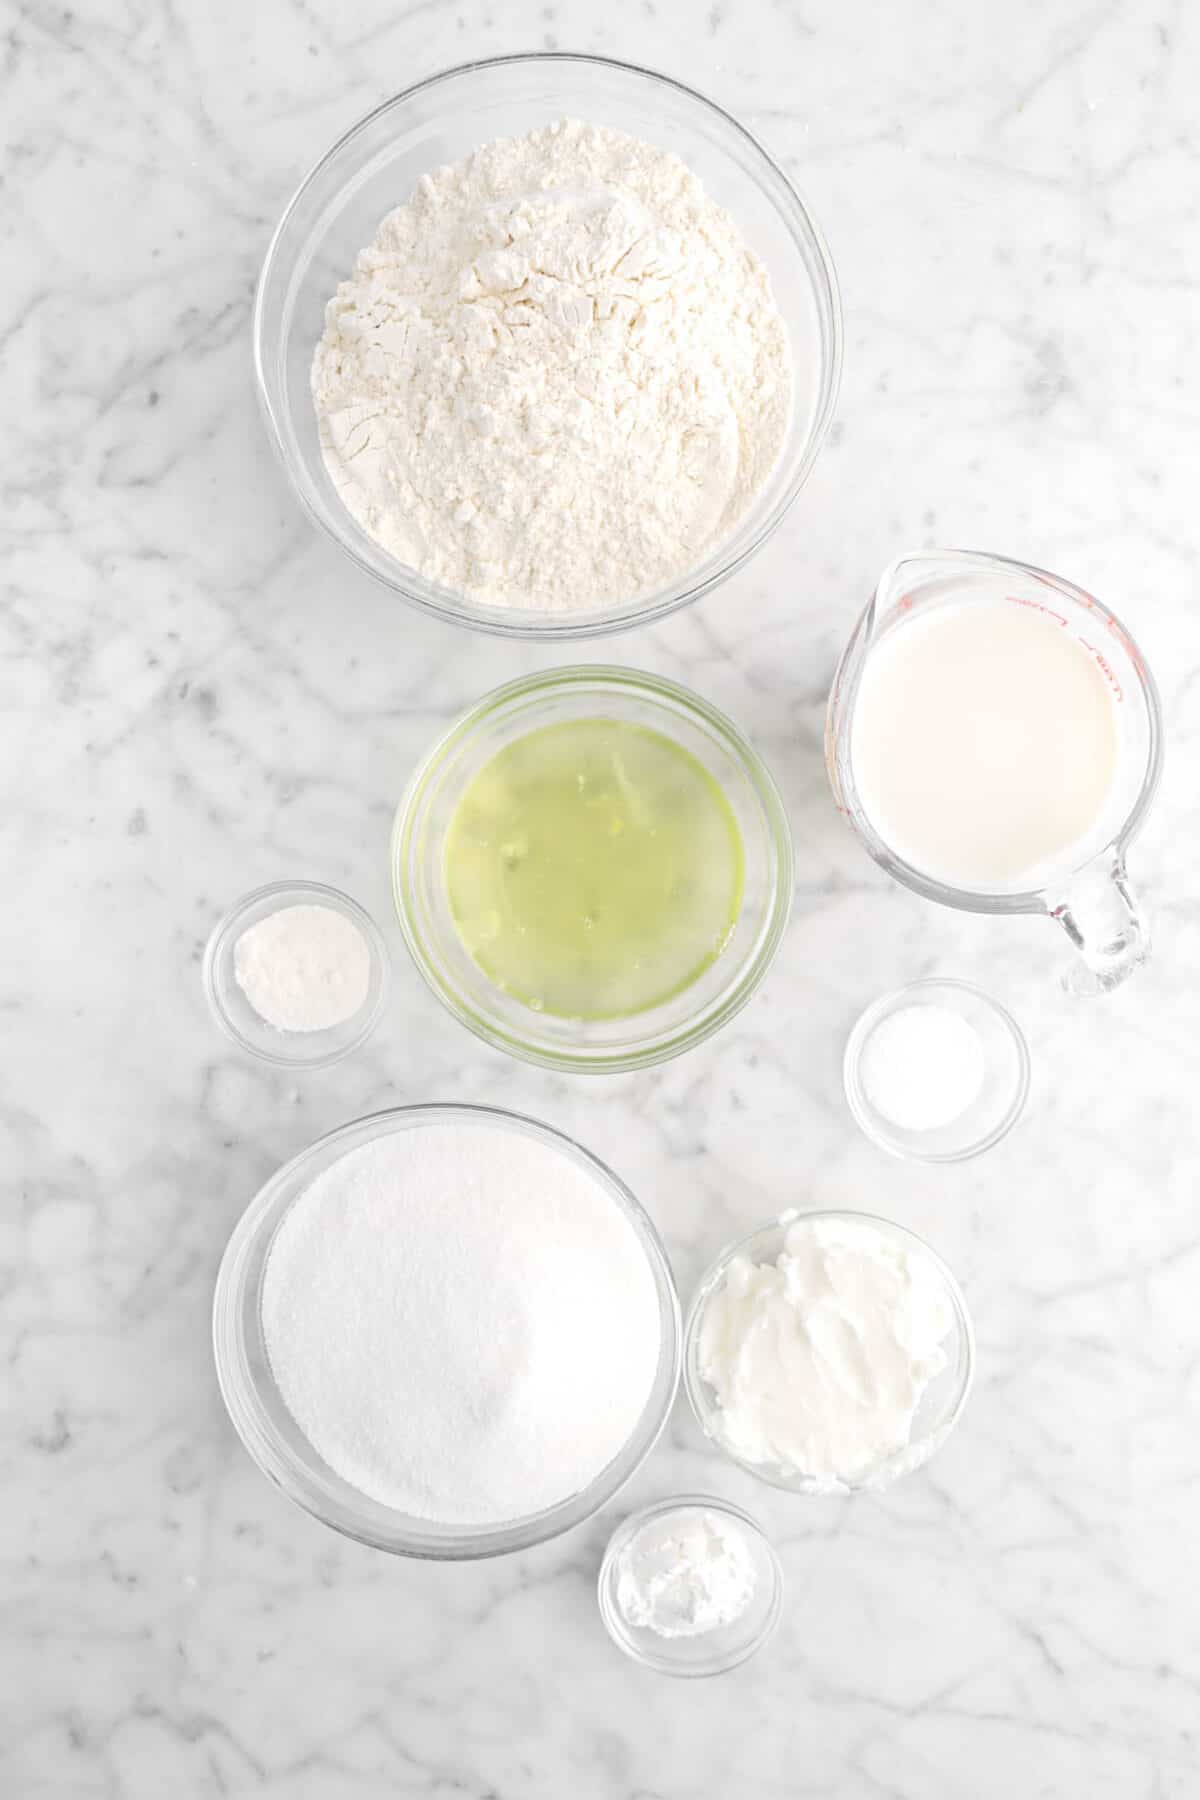 flour, milk, egg whites, vanilla powder, salt, shortening, sugar, and baking powder in glass bowls